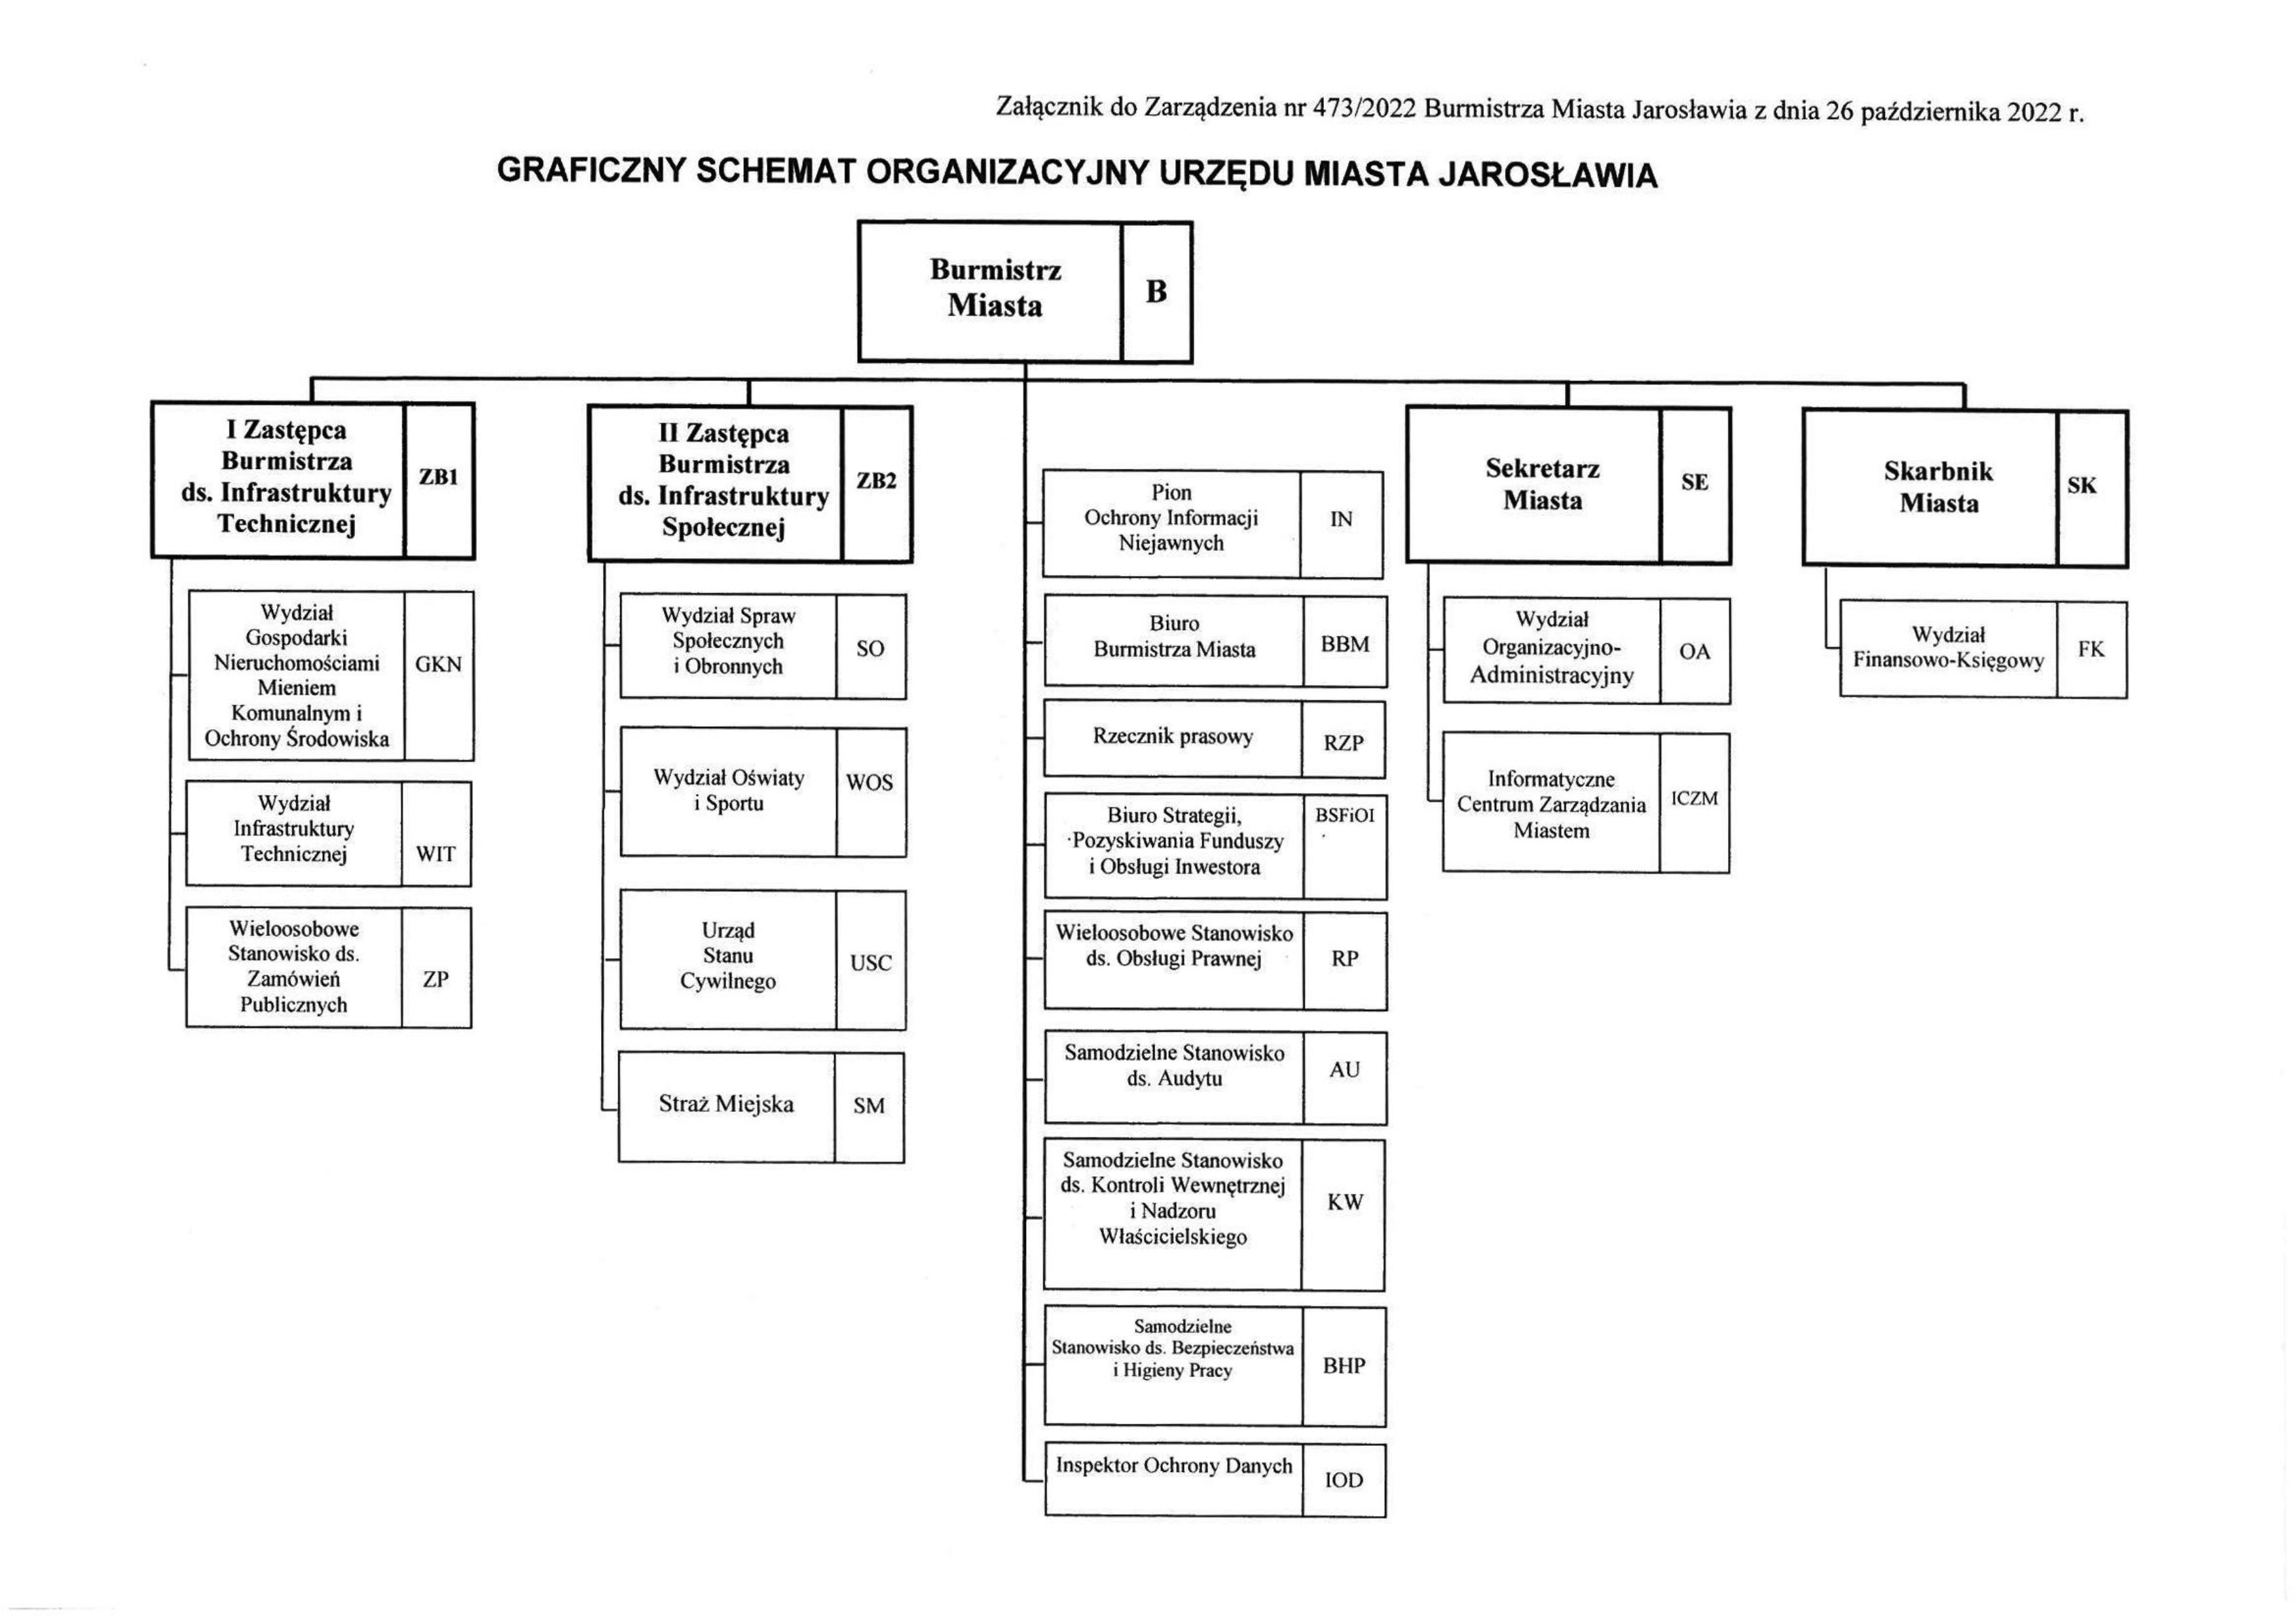 Graficzny schemat organizacyjny Urzędu Miasta Jarosławia bedący załącznikiem do Zarządzenia nr 473/2022 Burmistrza Miasta Jarosławia z dnia 26 października 2022 roku